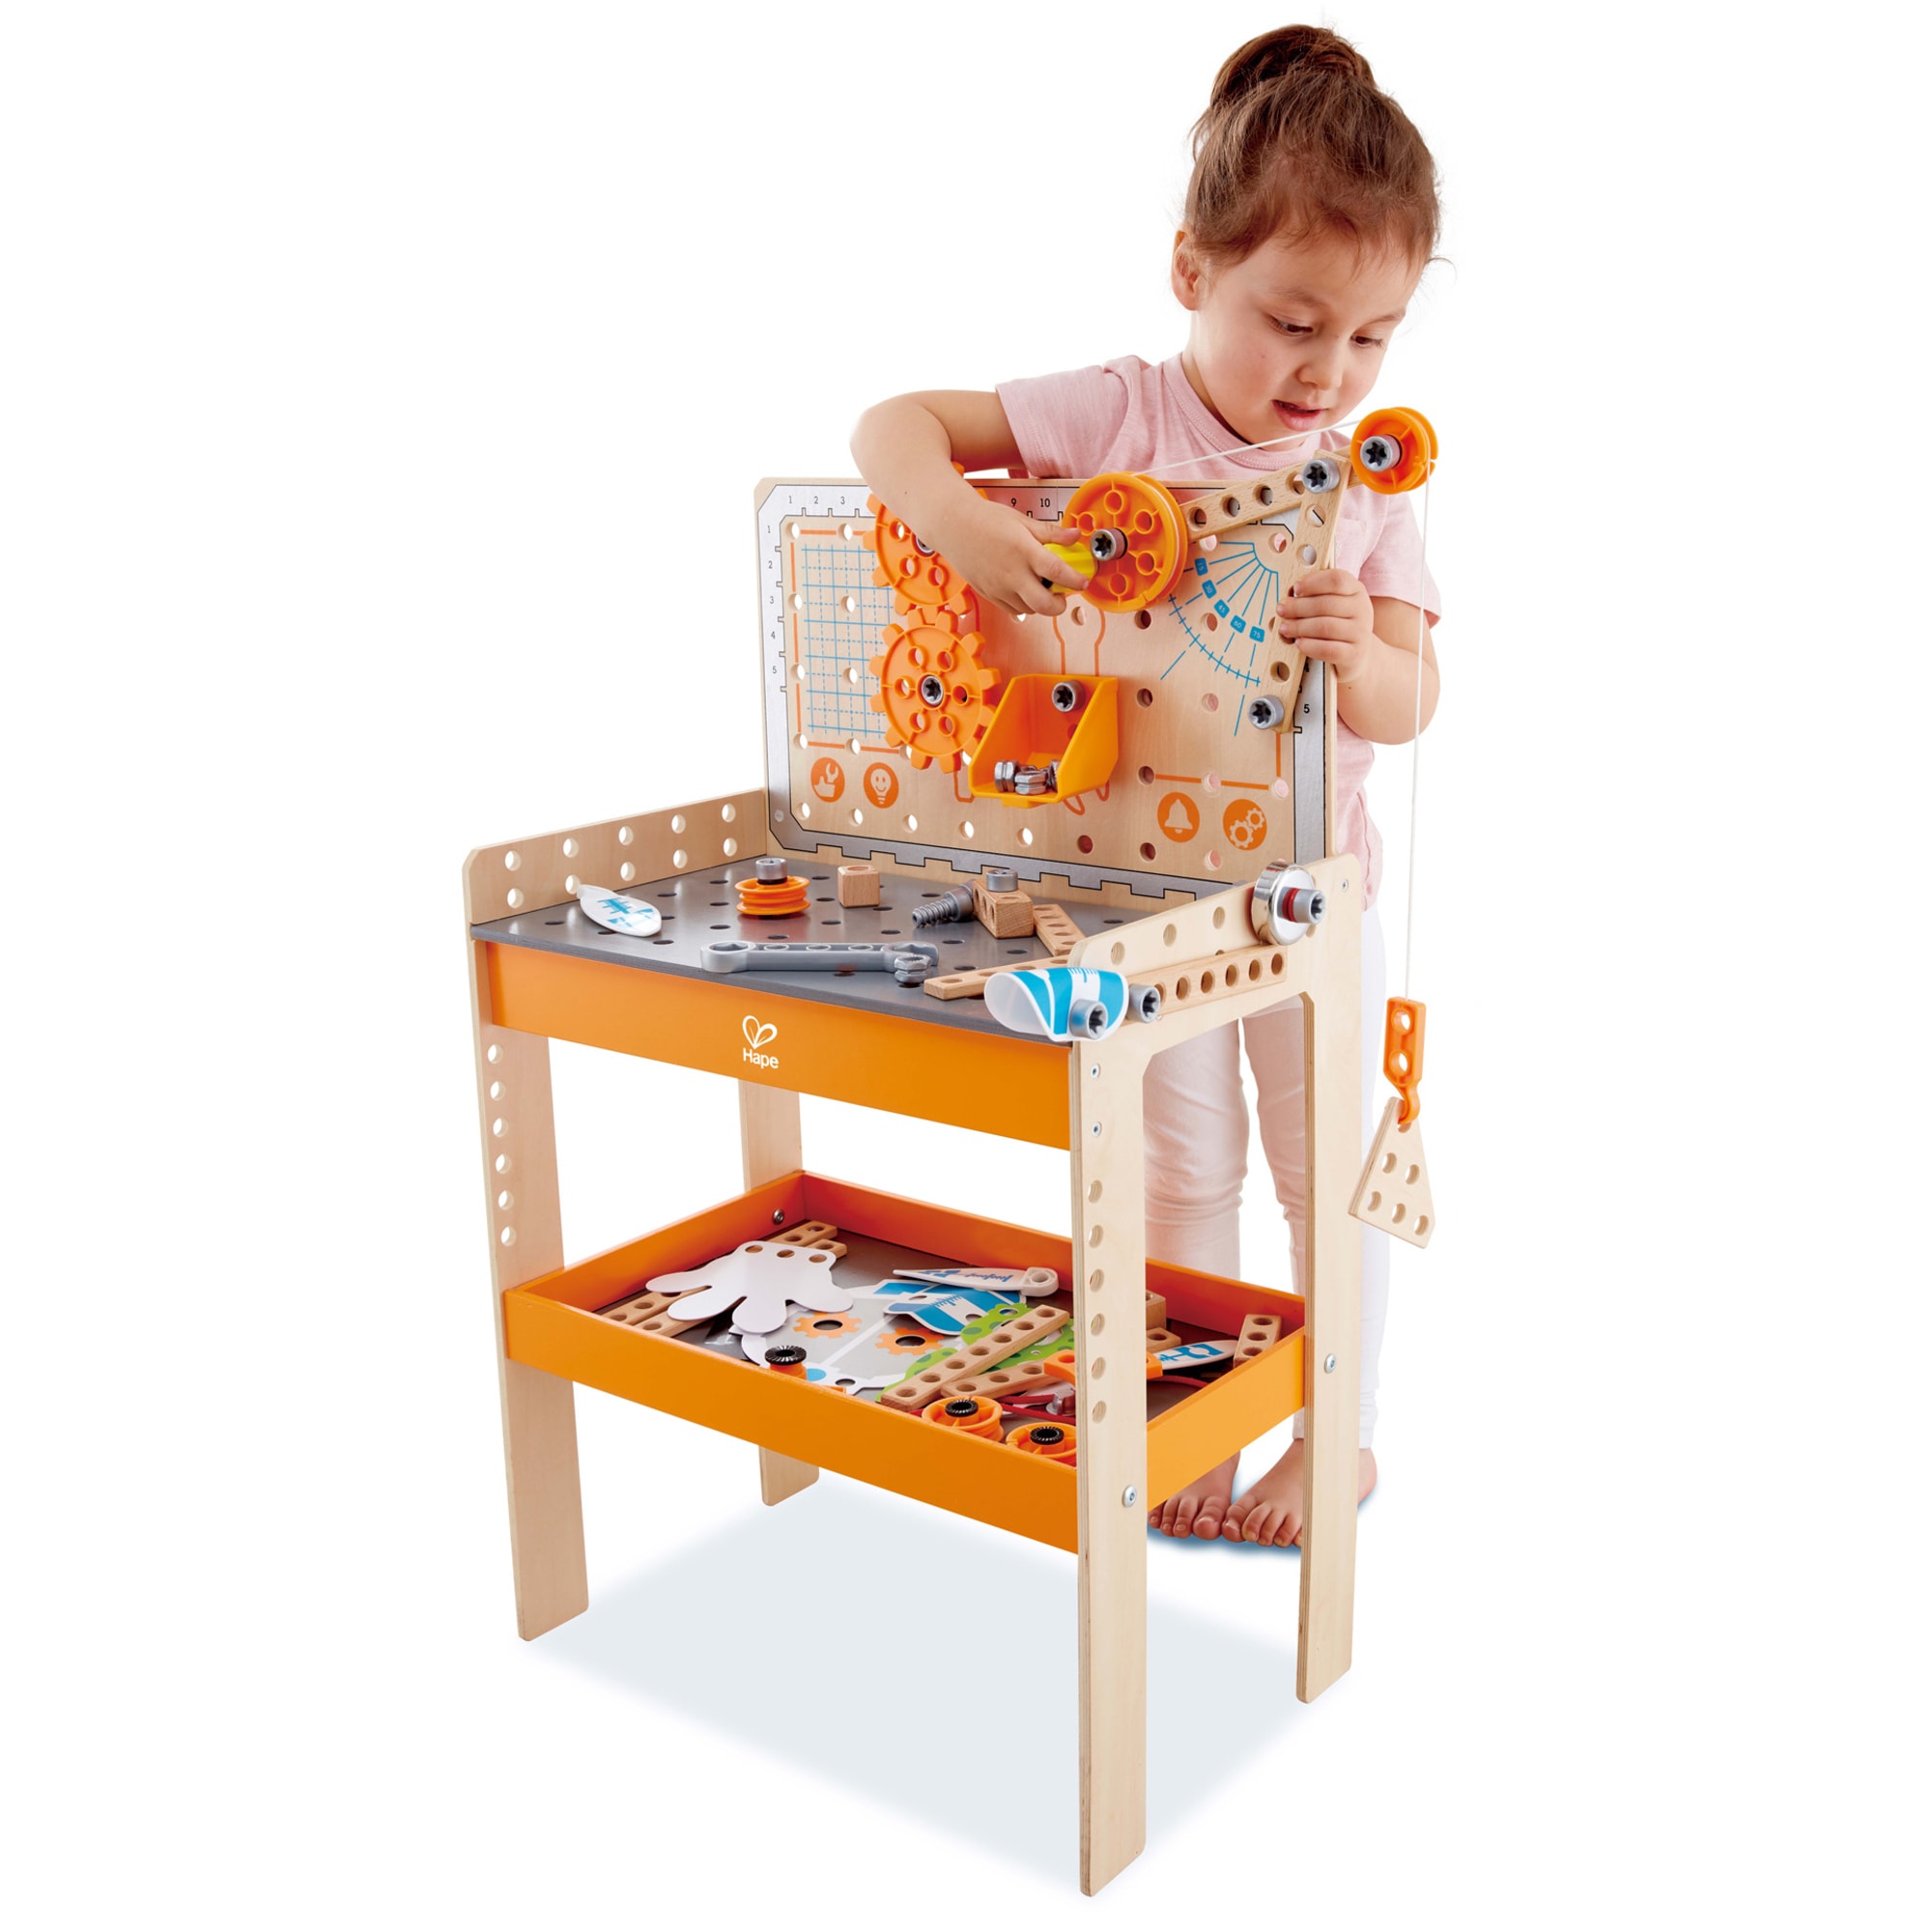 Hape Junior Inventor Deluxe Scientific Workbench, 79 Piece Wooden Building Set - image 3 of 6